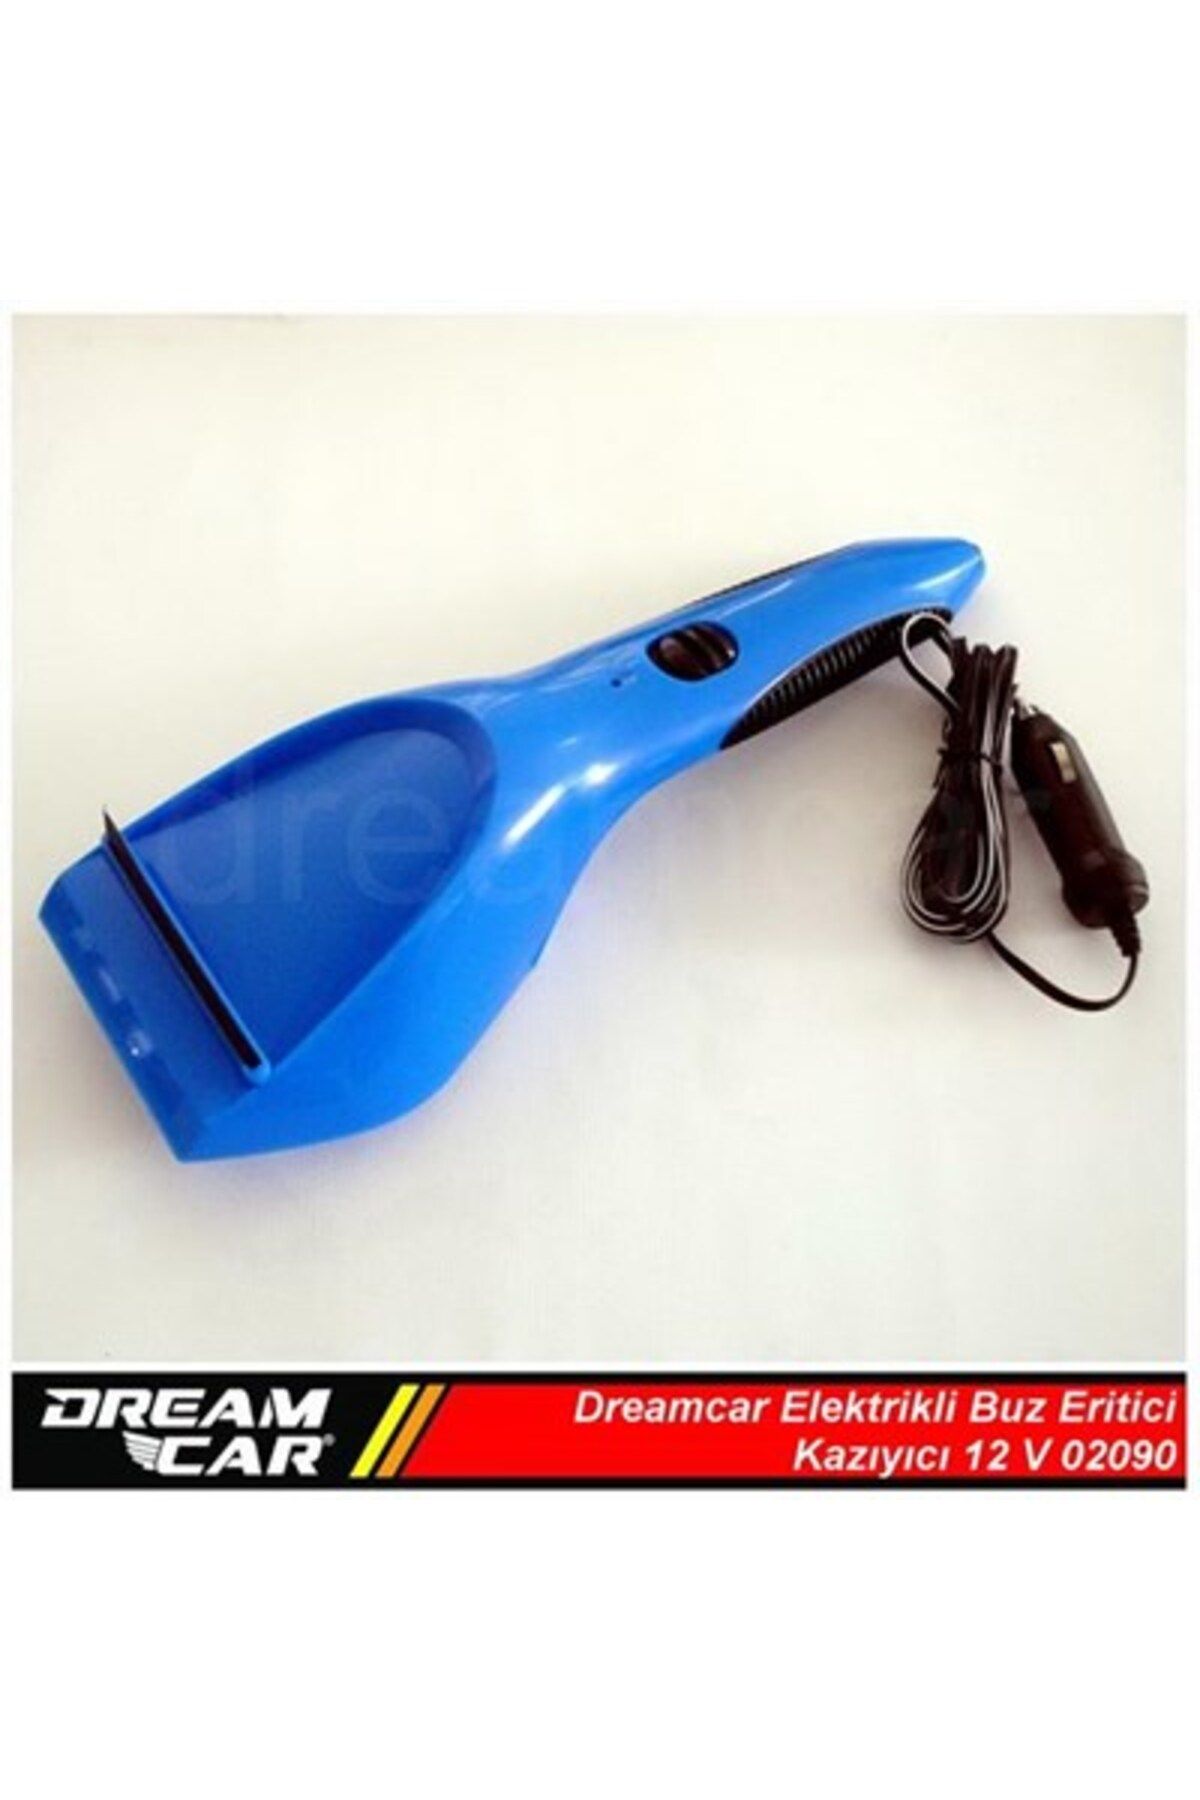 Dreamcar Elektrikli Buz Kazıyıcı 12 V 02090